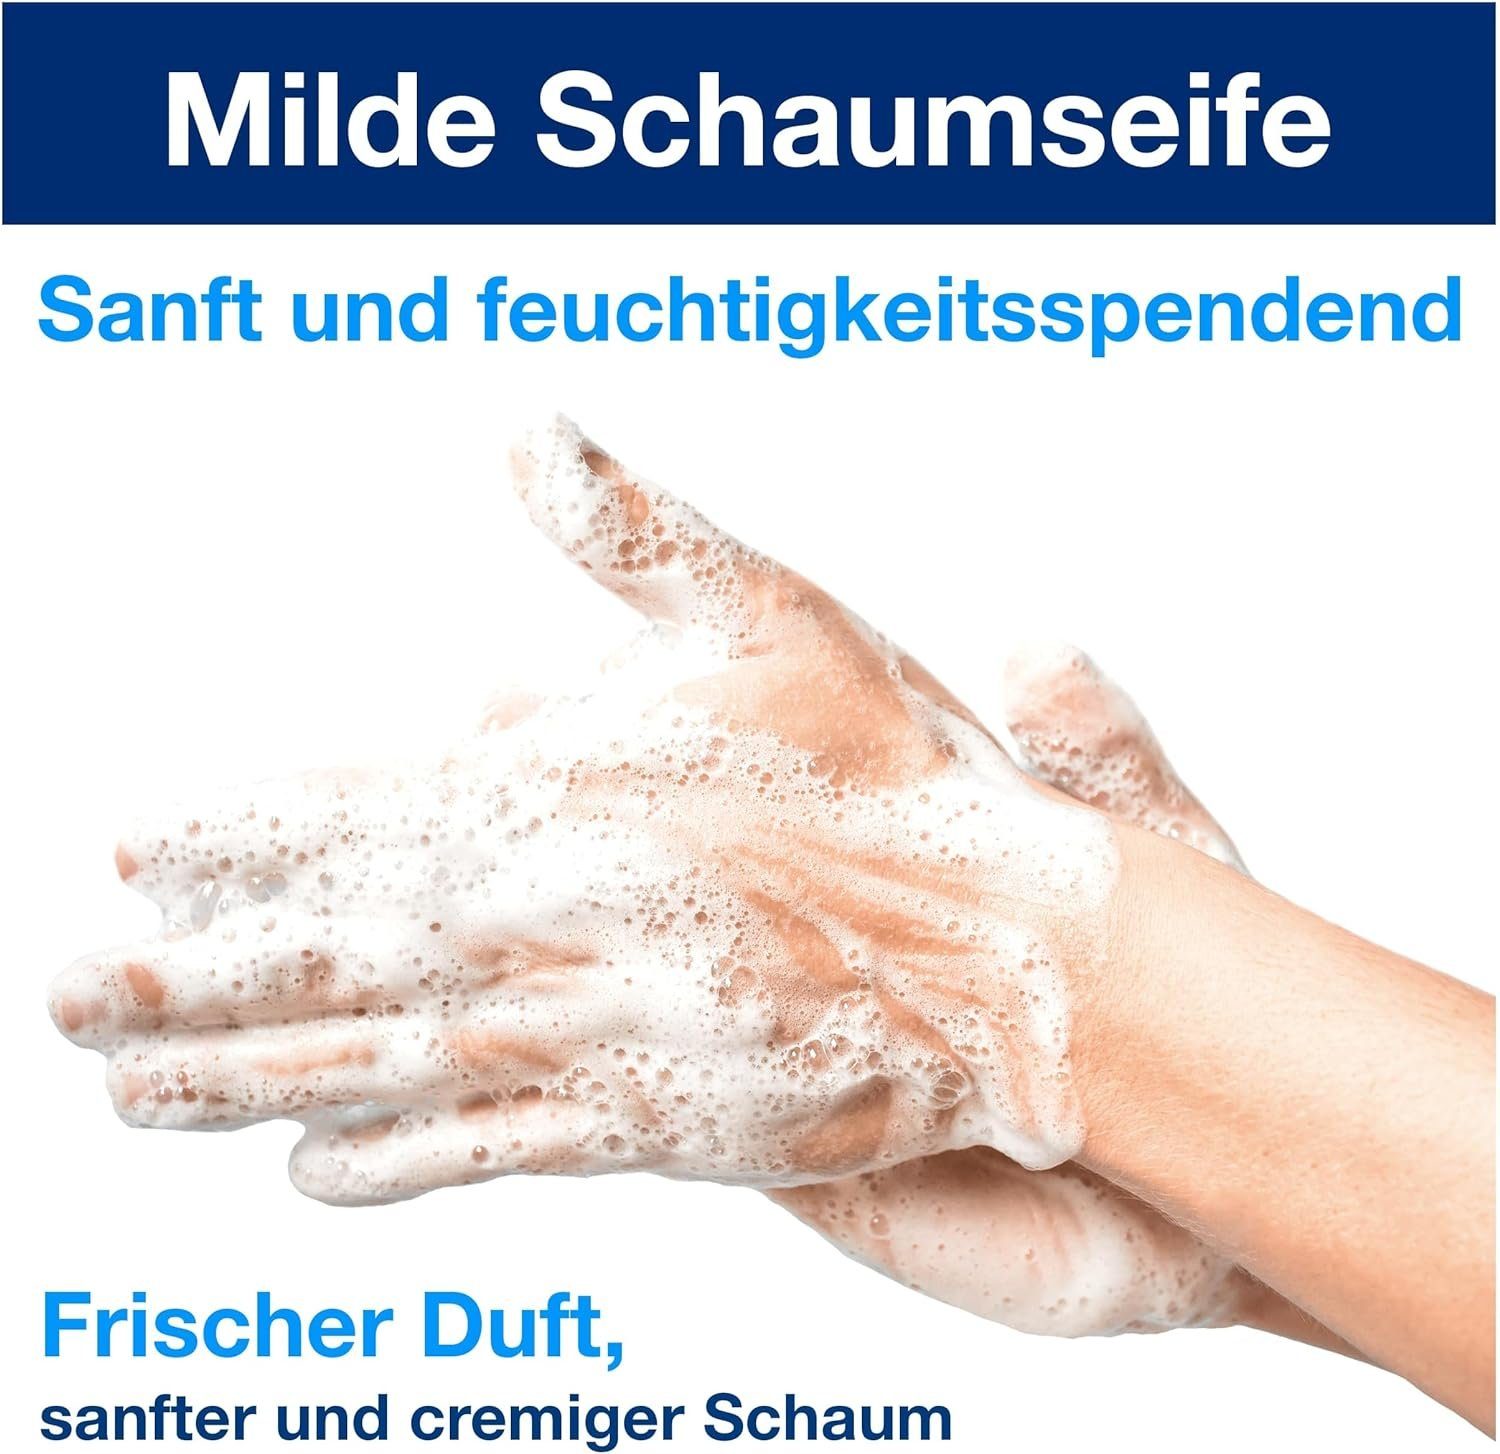 mild Spender S4 für je Premium Flüssigseife Schaumseife 520501 ml 1000 duftende TORK